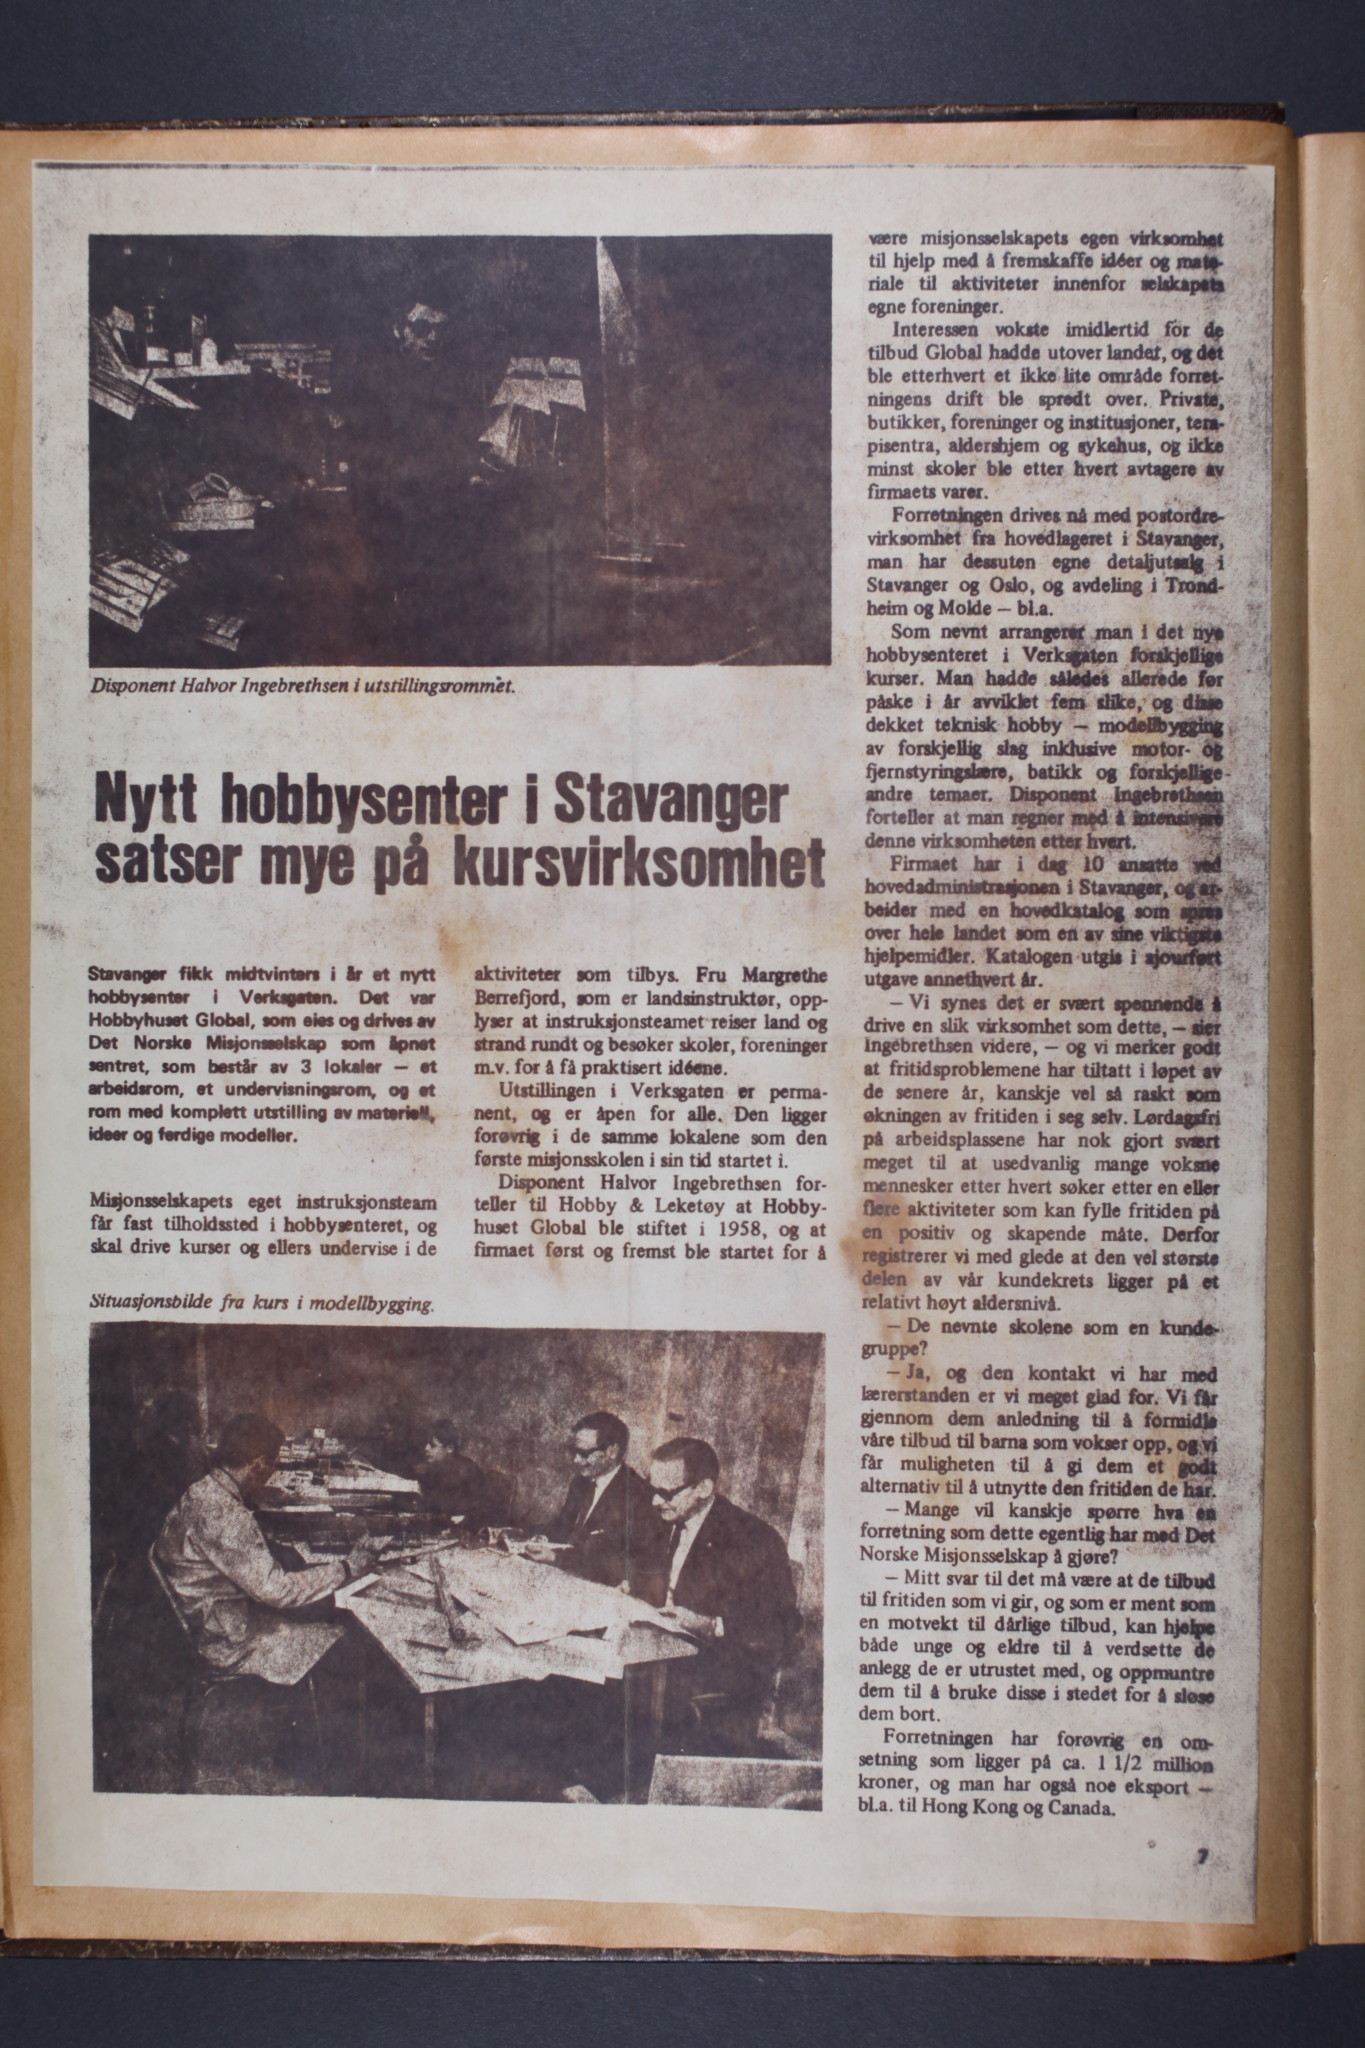 "Nytt hobbysenter i Stavanger satser mye på kursvirksomhet". Publisert i bladet Hobby & Leketøy, ca. 1964.